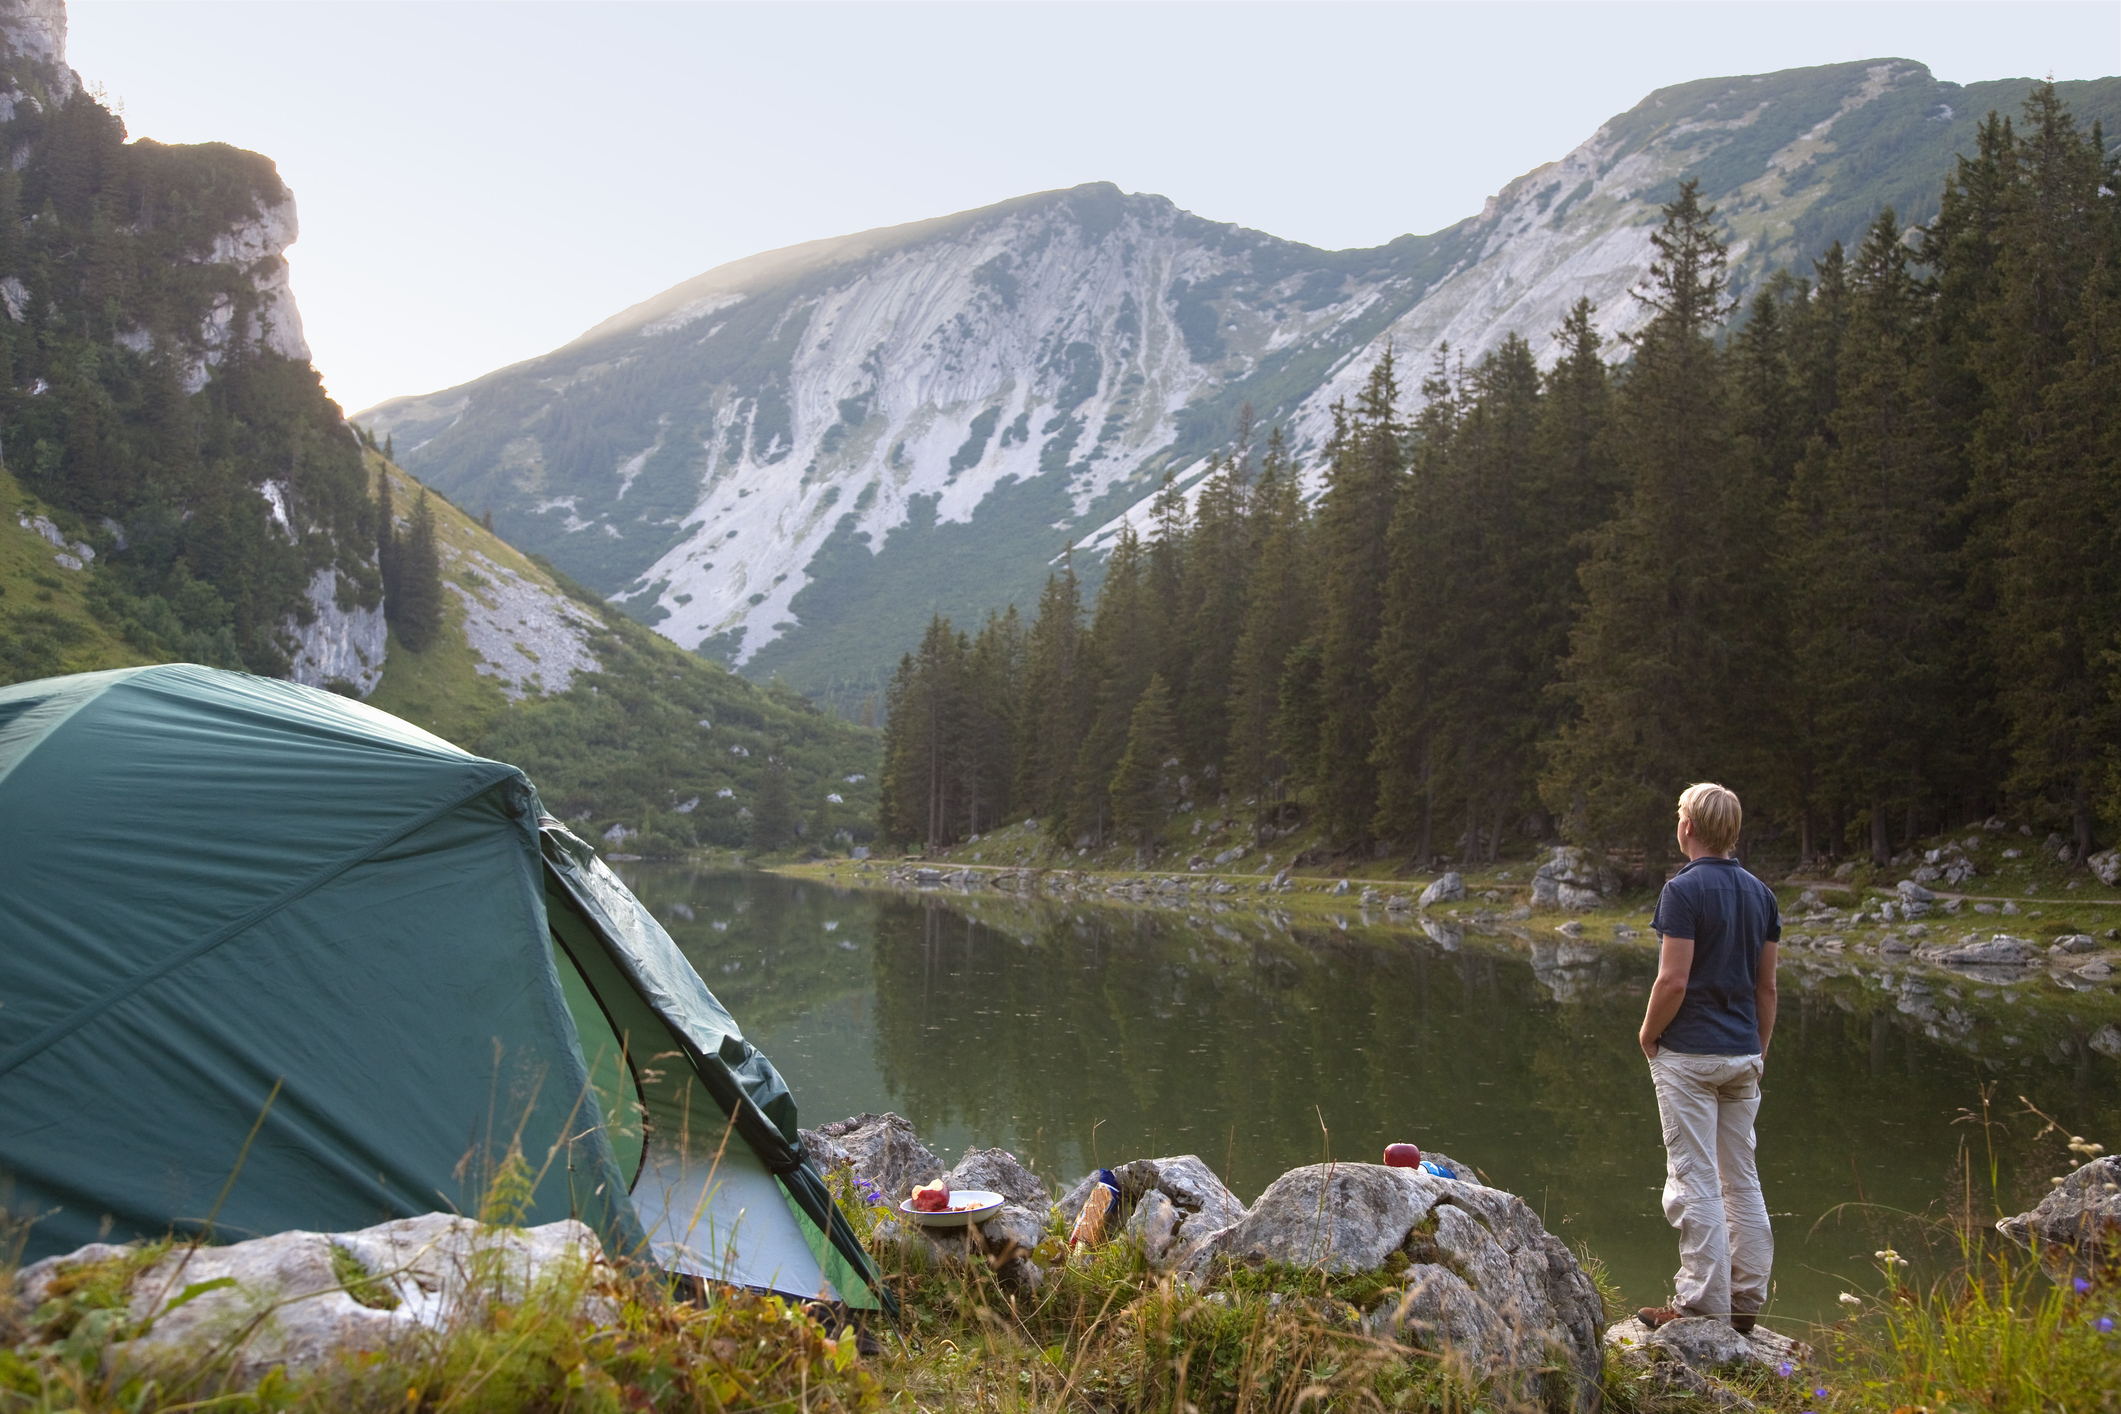 Checkliste für den Campingurlaub: Das sollten Einsteiger beachten